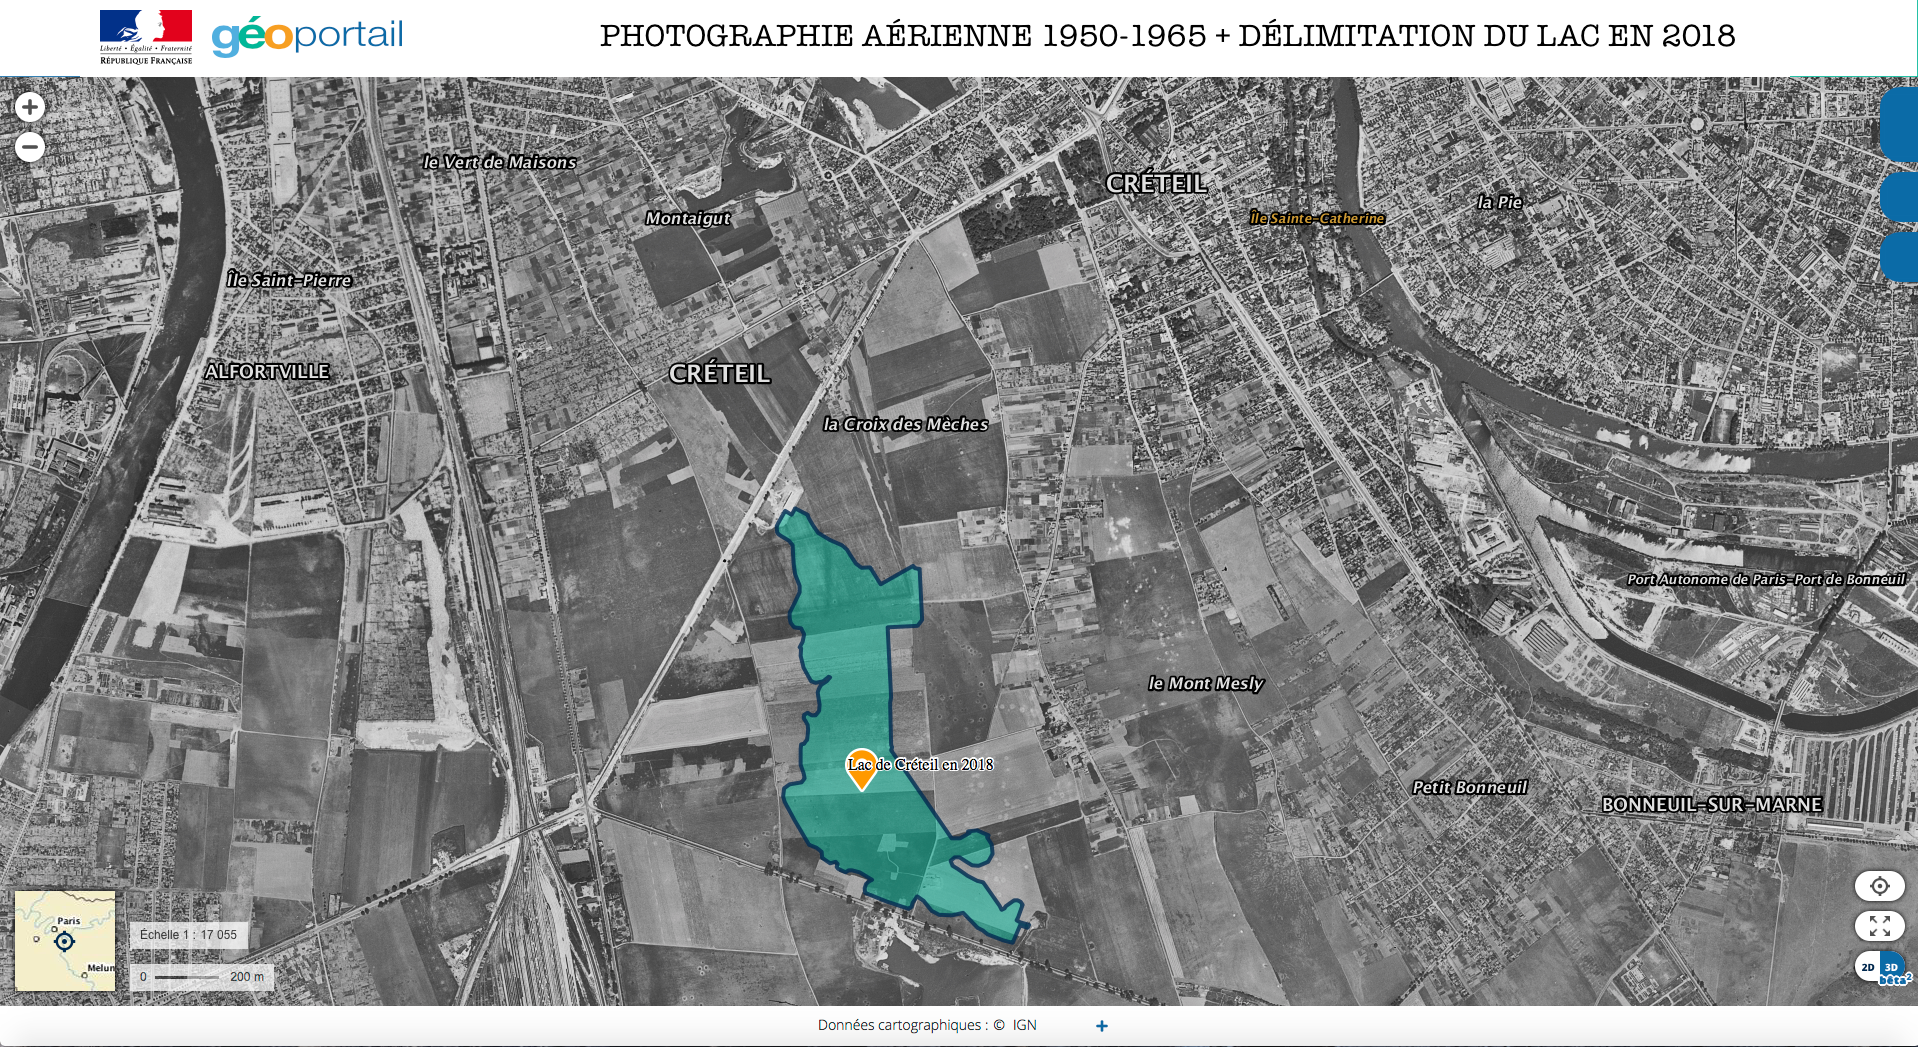 PHOTOGRAPHIE AÉRIENNE 1950-1965 + DÉLIMITATION DU LAC EN 2018